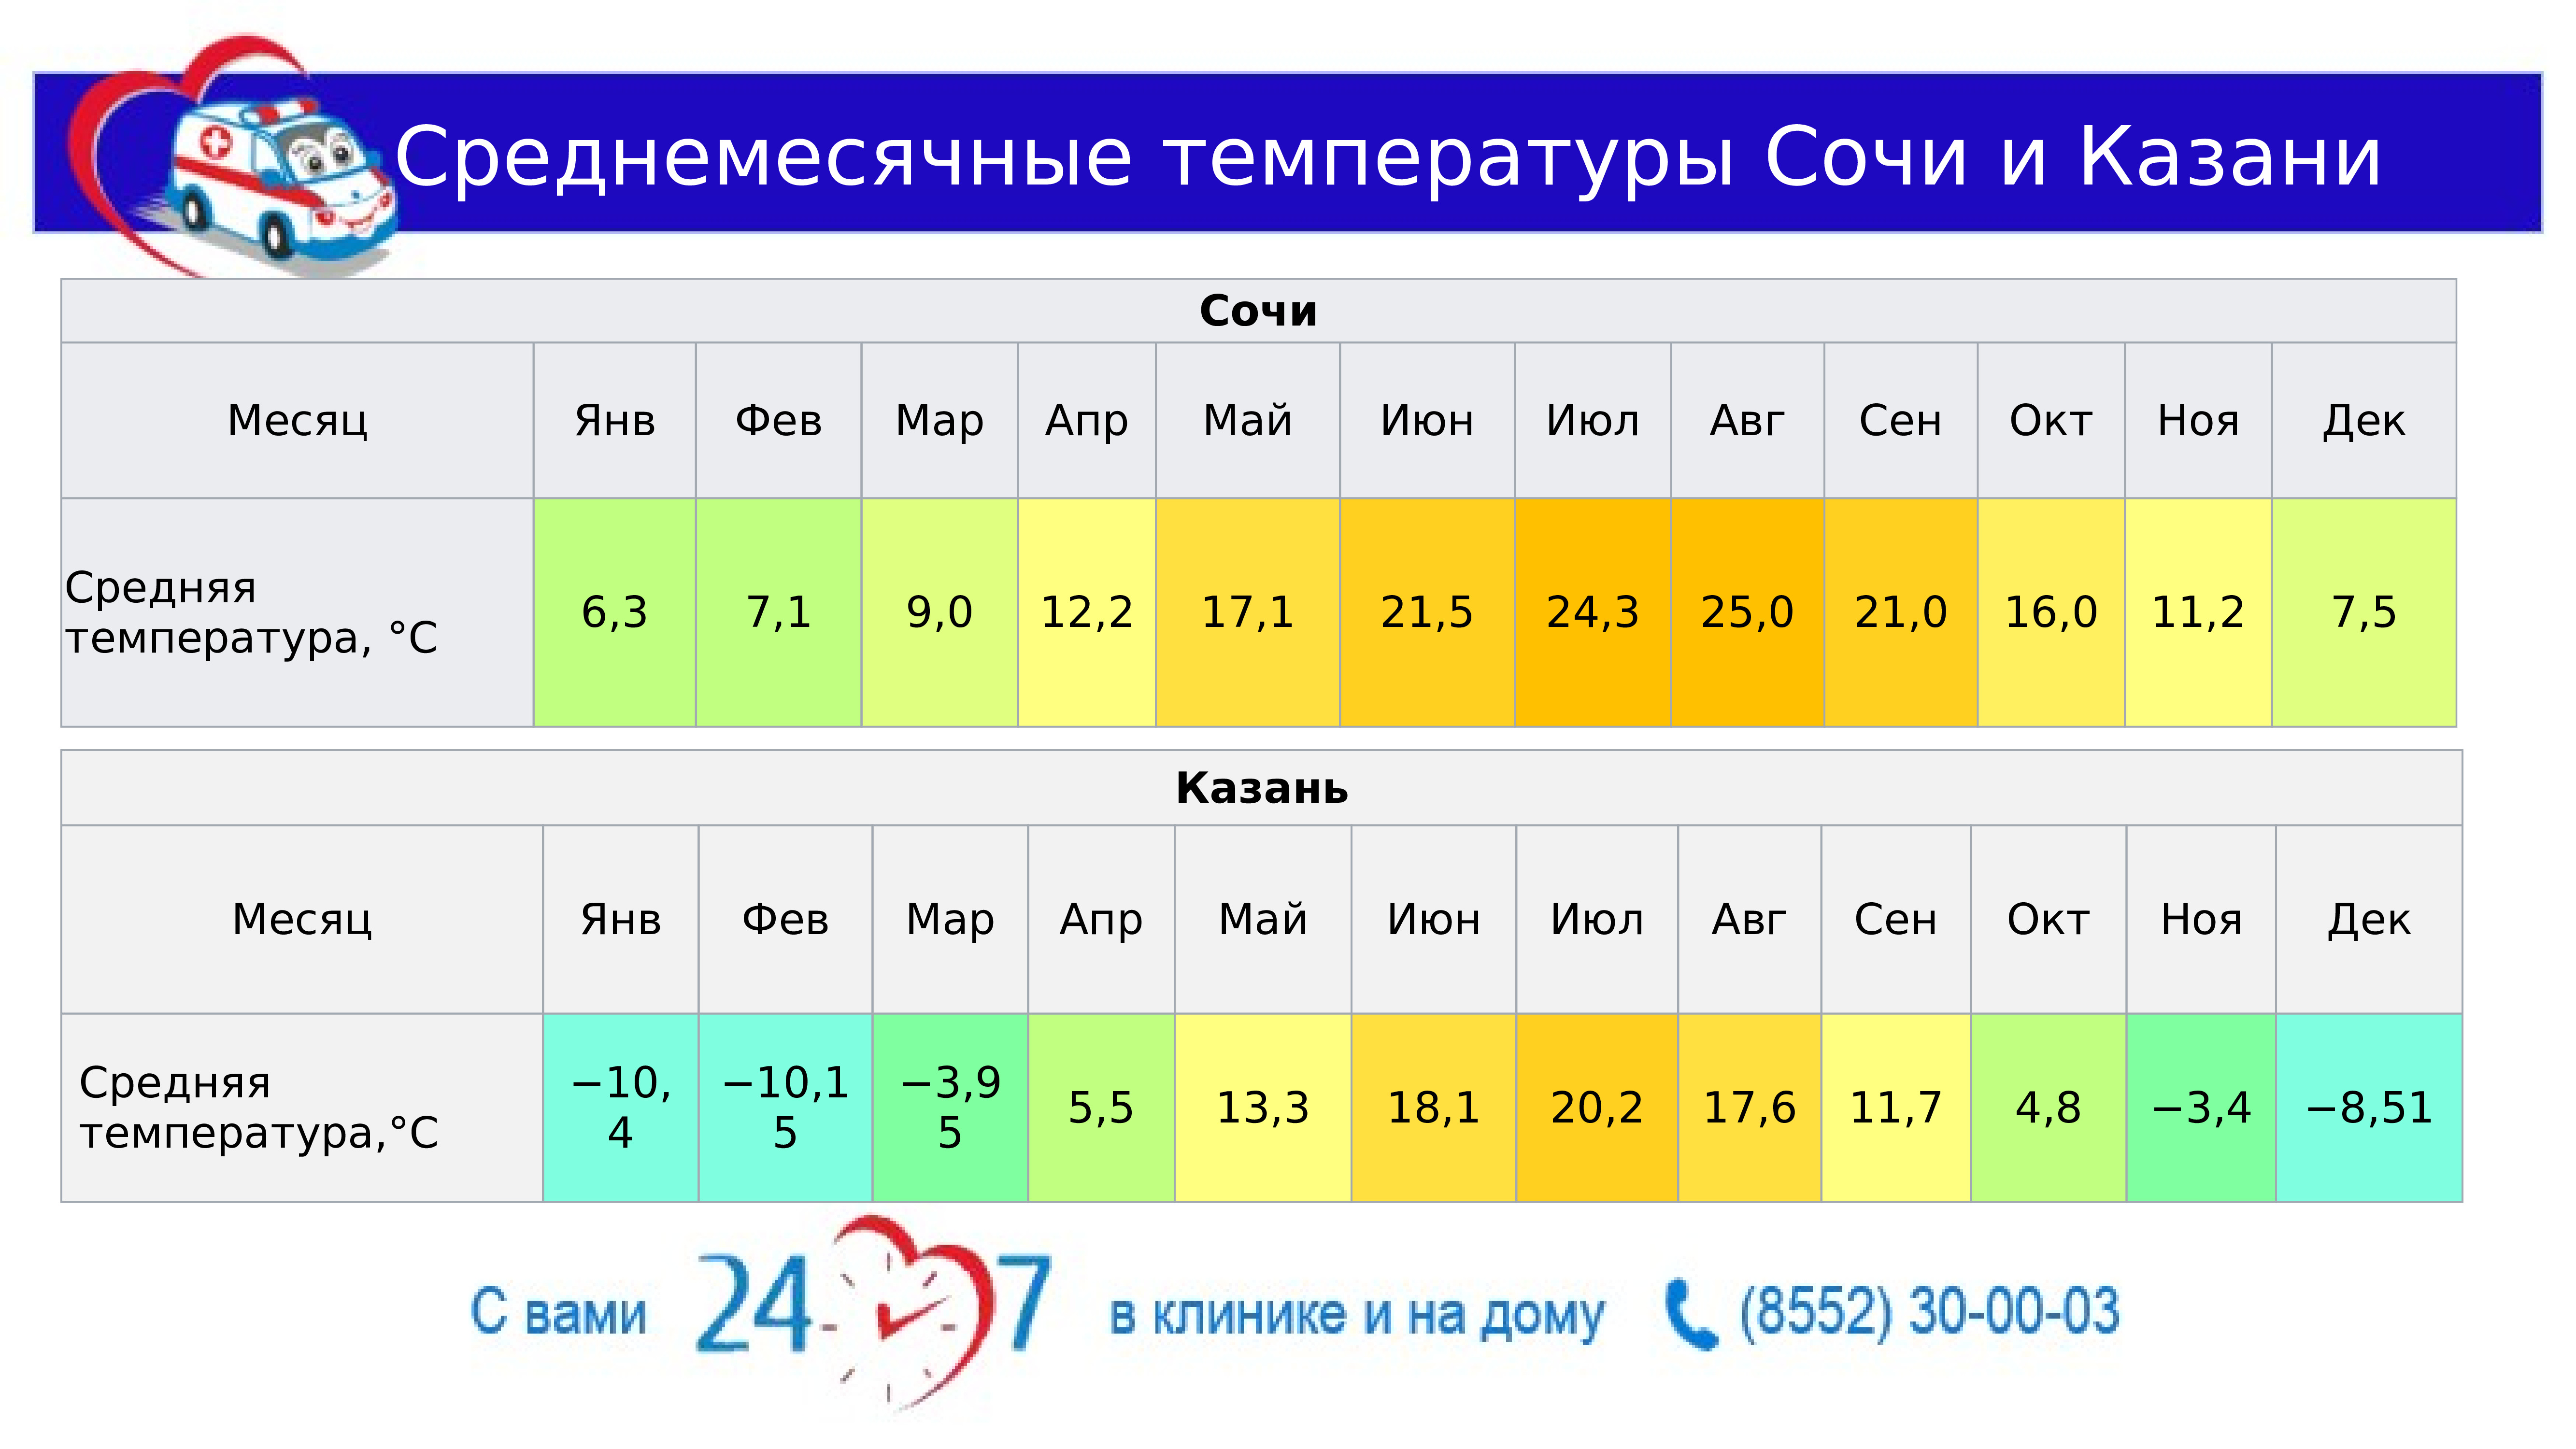 Вода в сочи по месяцам. Средняя температура в Сочи. Средняя температура в Казани. Средняя температура в Сочи по месяцам. Средняя температура в Казани по месяцам.